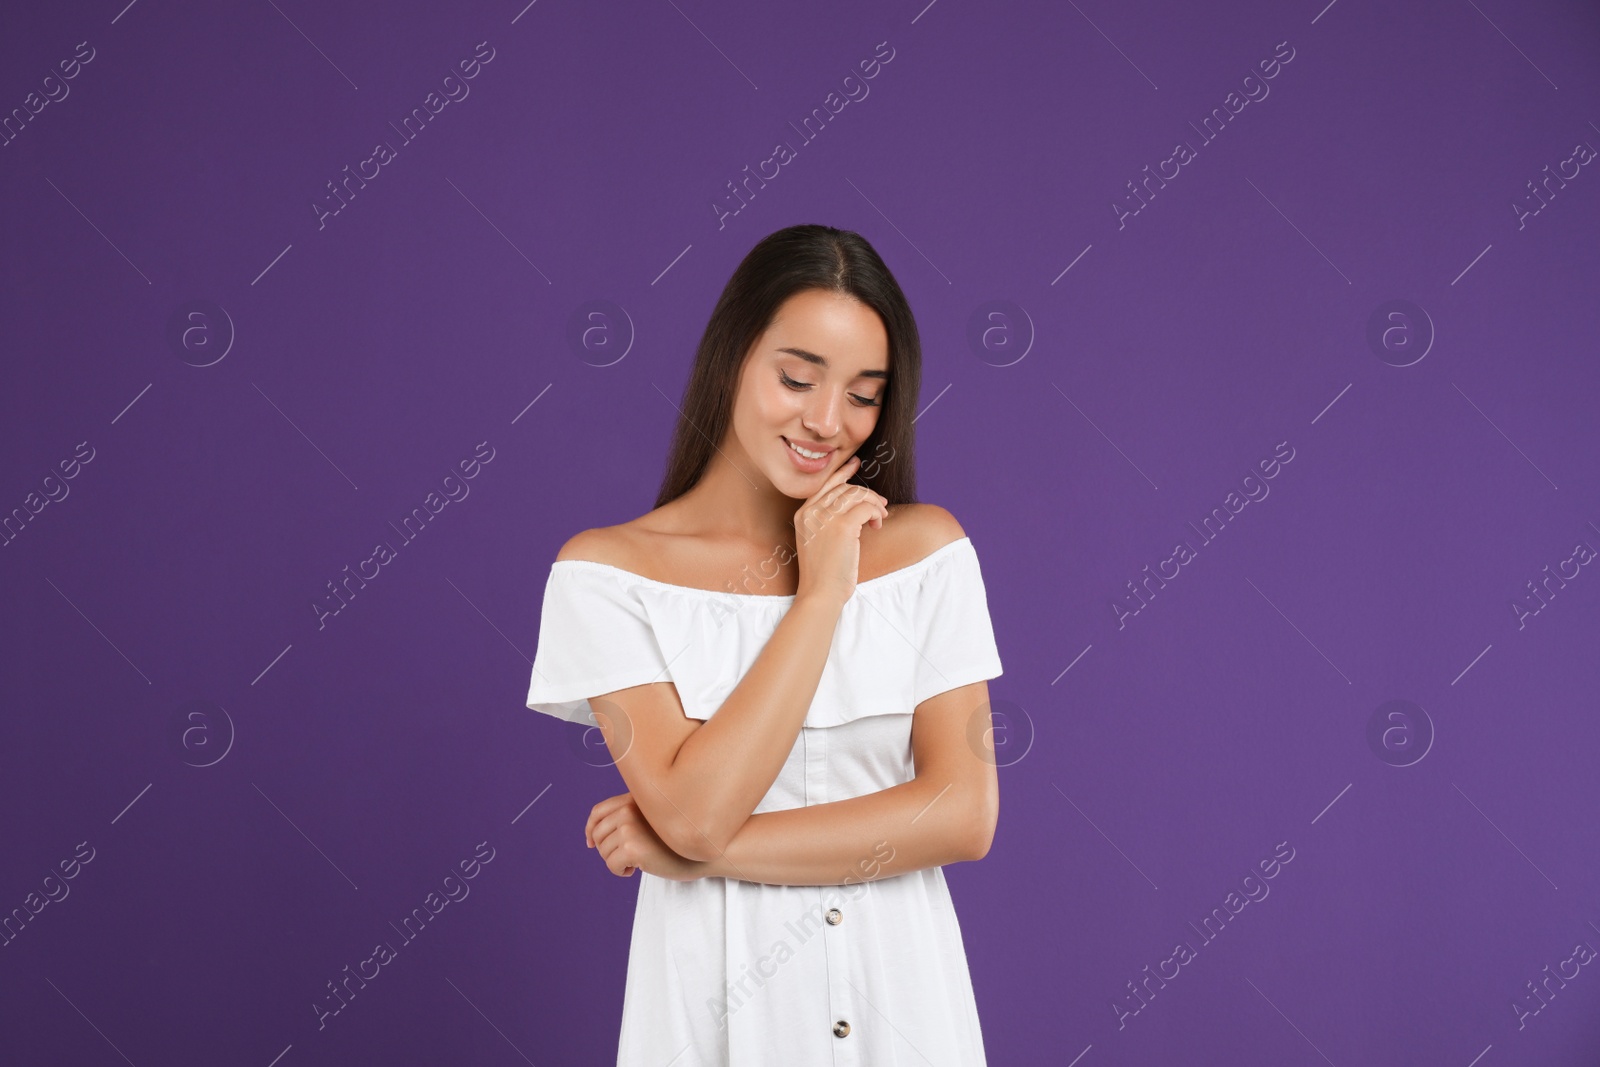 Photo of Young woman wearing stylish white dress on purple background